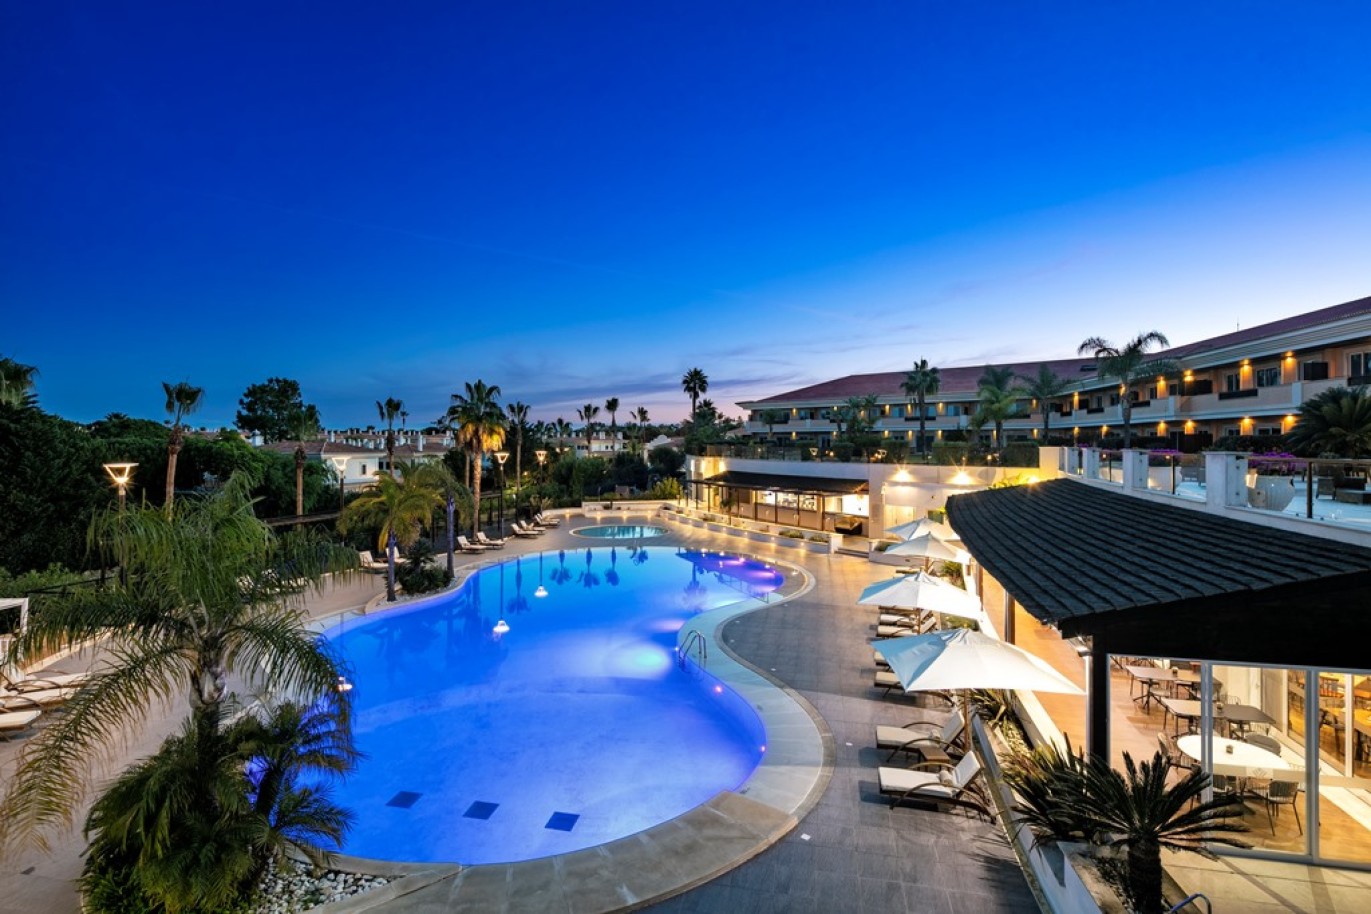 Apartamento, 2 quartos, piscina, para venda na Quinta do Lago, Algarve_262248